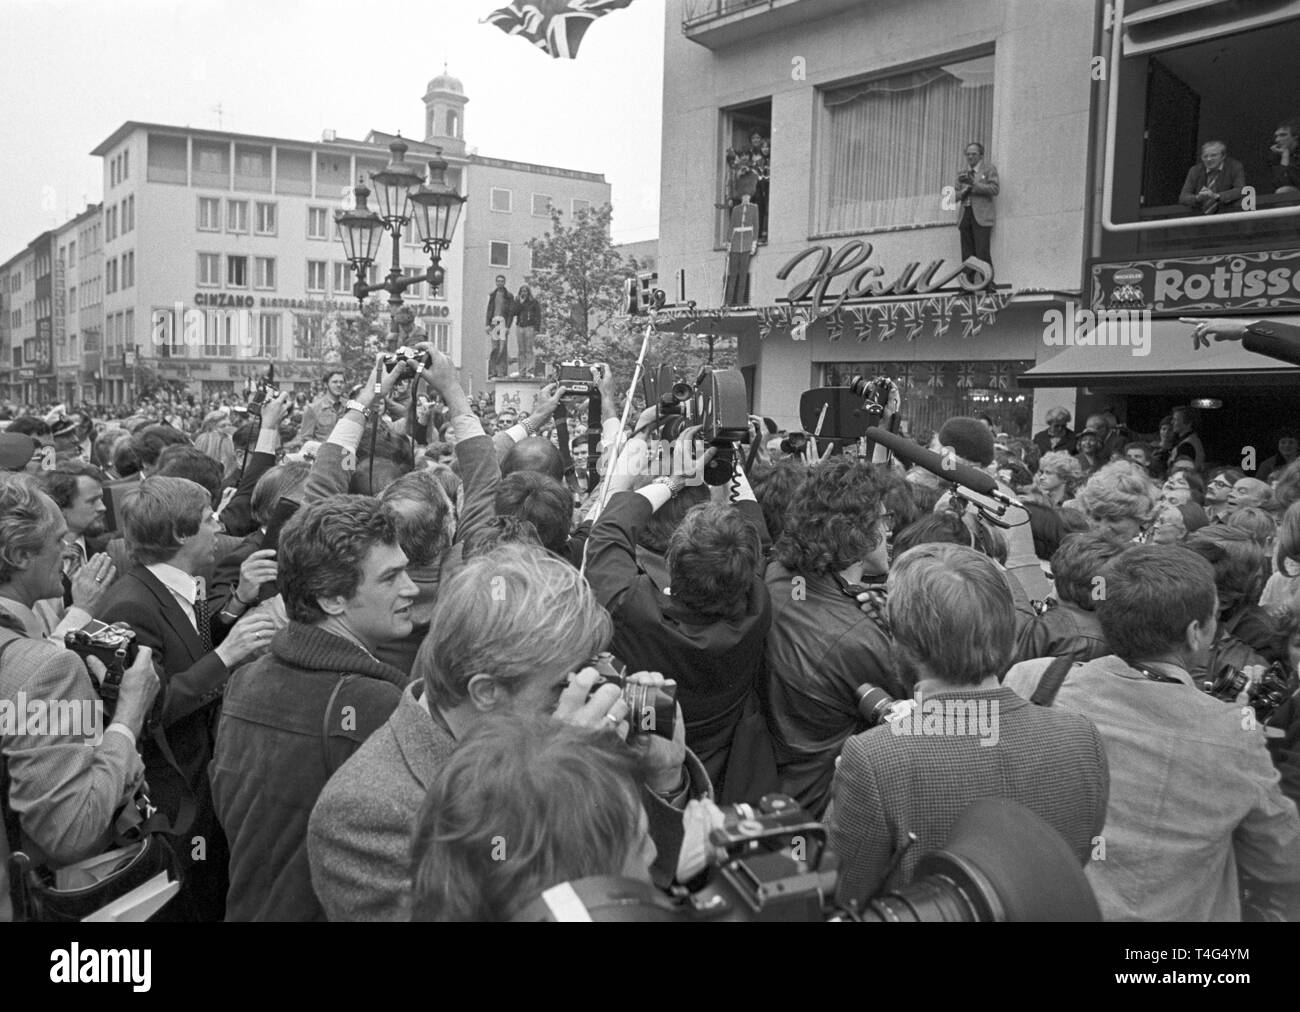 Queen Elizabeth ist von der Masse der Menschen beim Gehen auf dem Marktplatz in Bonn am 22. Mai 1978. | Verwendung weltweit Stockfoto